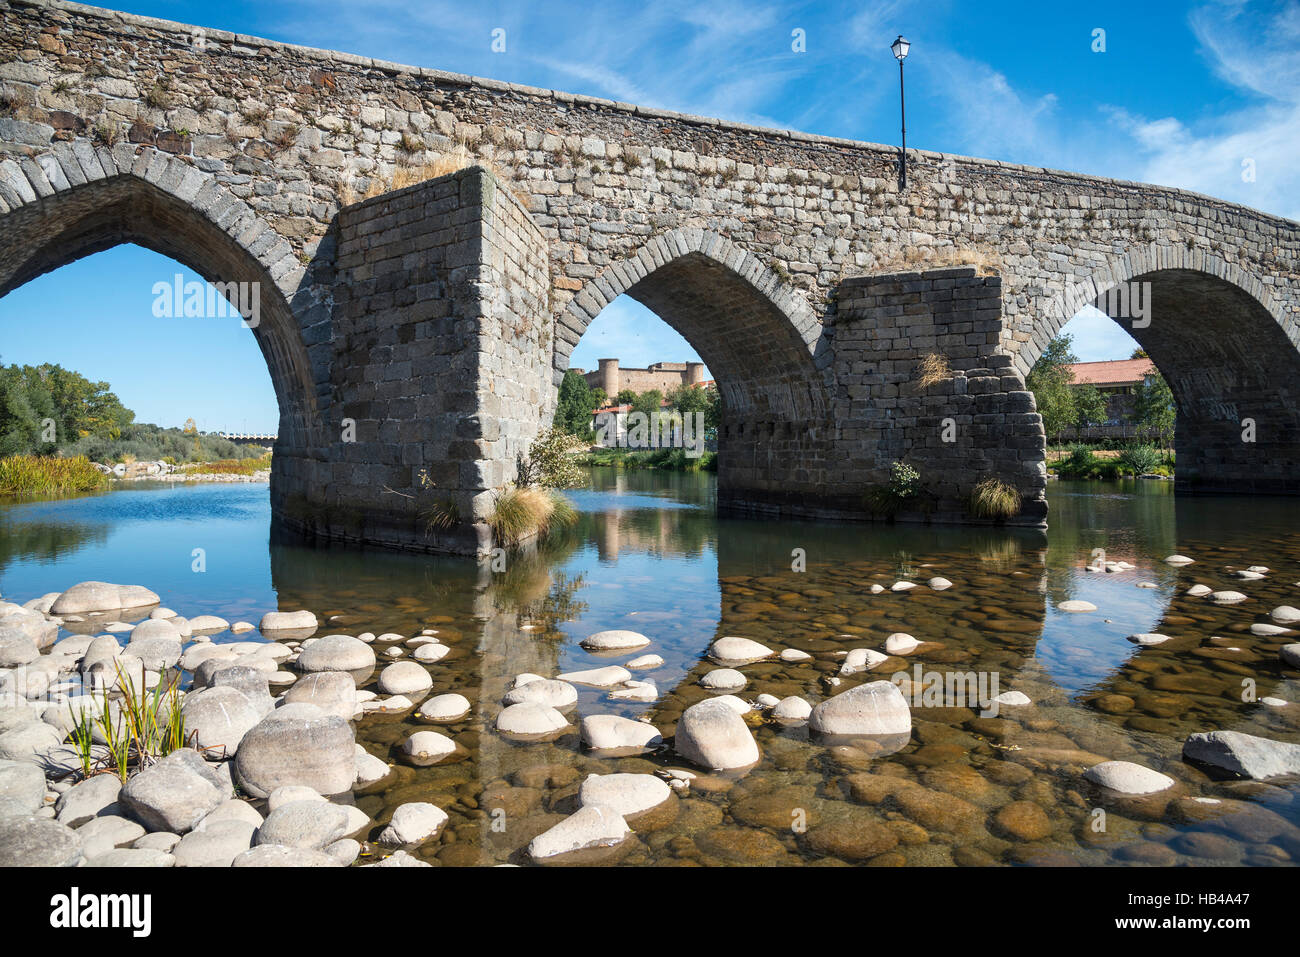 Il ponte romanico sul fiume Tormes a El Barco de avila con il castello sullo sfondo, provincia di Avila, Spagna. Foto Stock